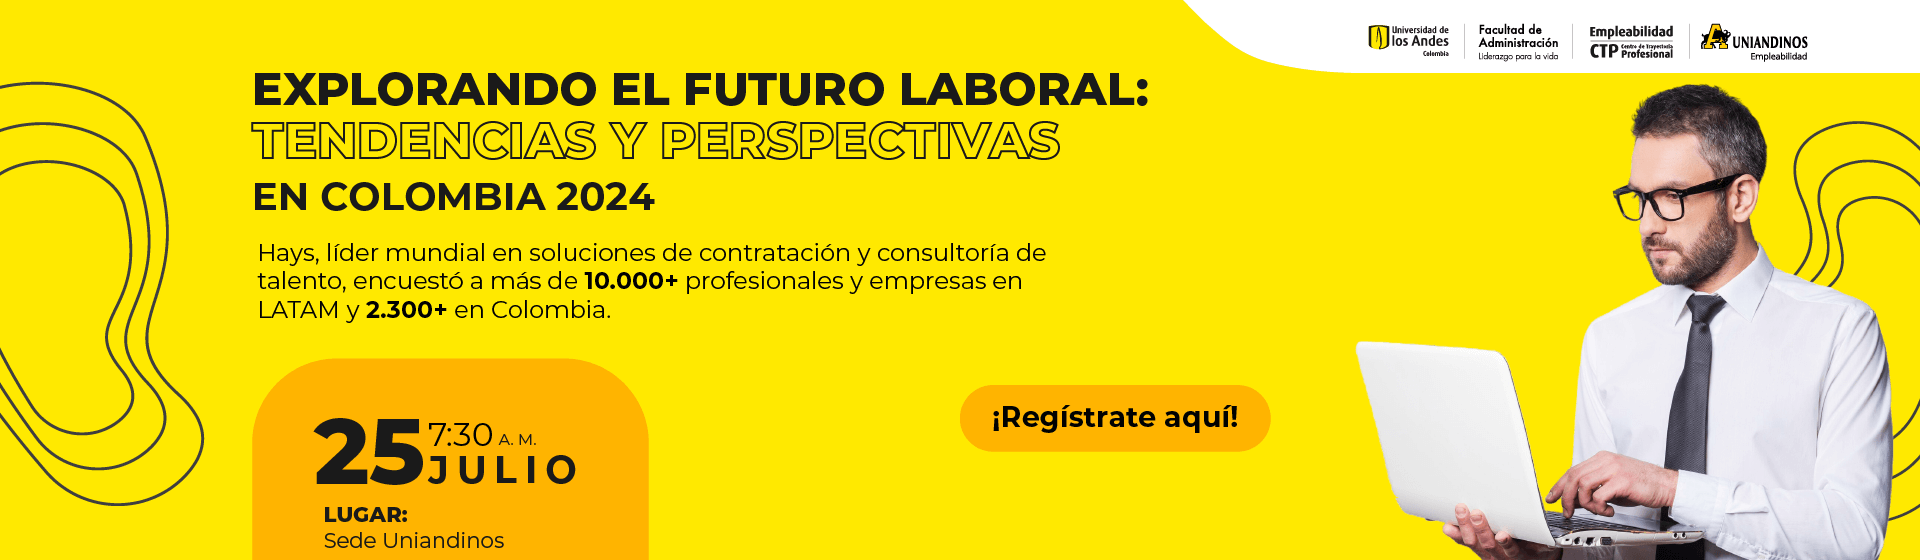 Explorando el Futuro Laboral: Tendencias y Perspectivas en Colombia 2024